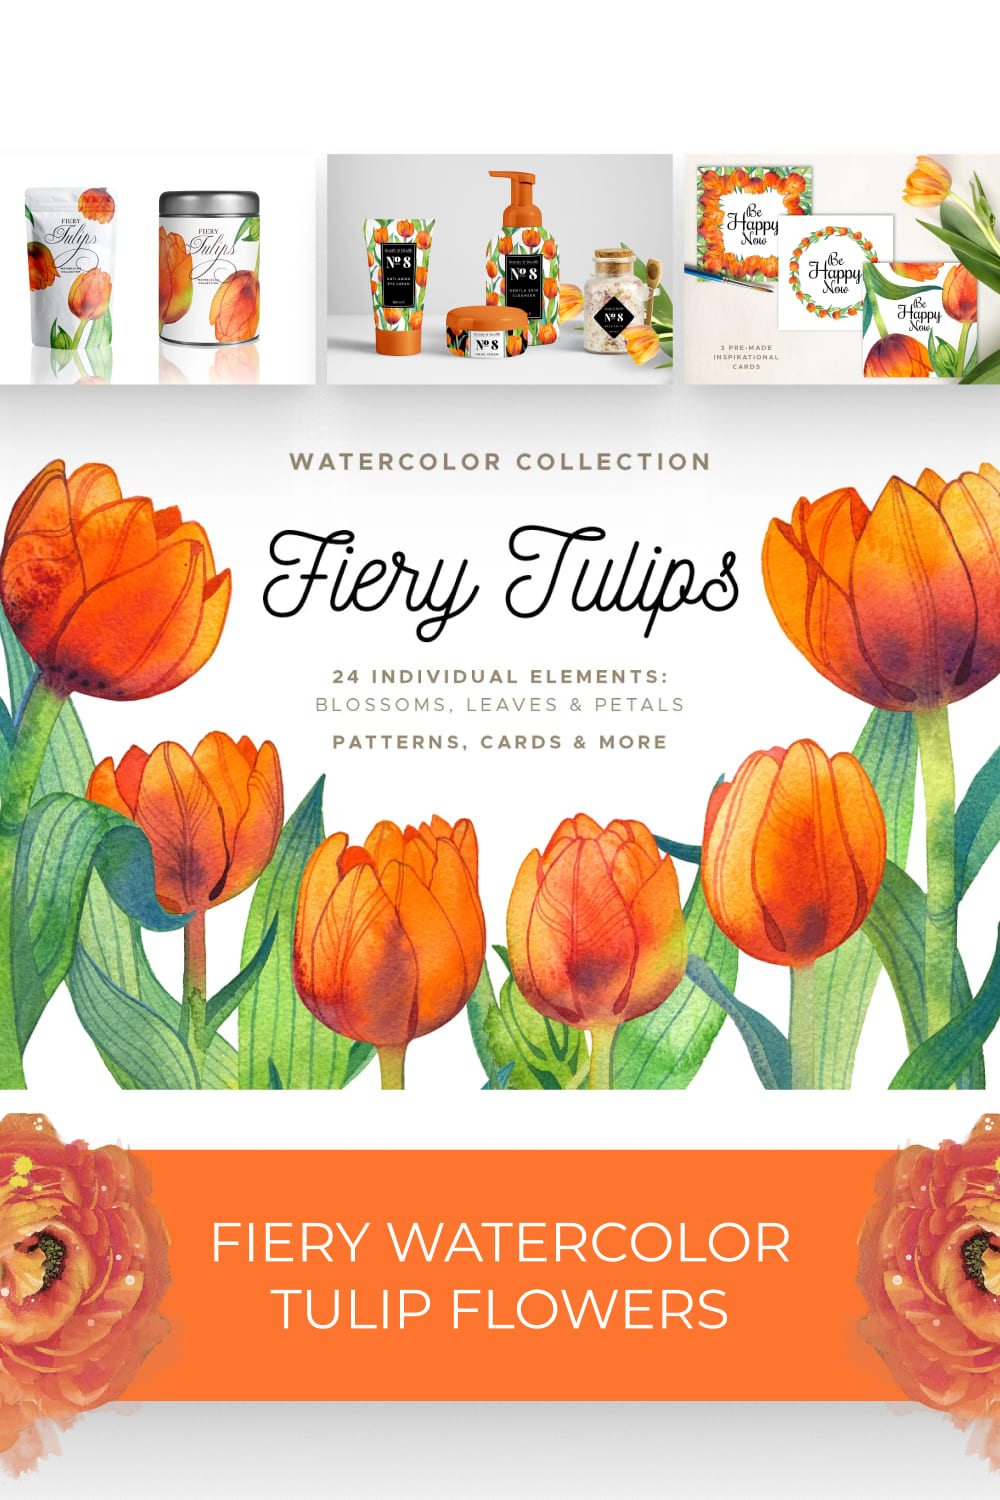 03 fiery watercolor tulip flowers1000x1500